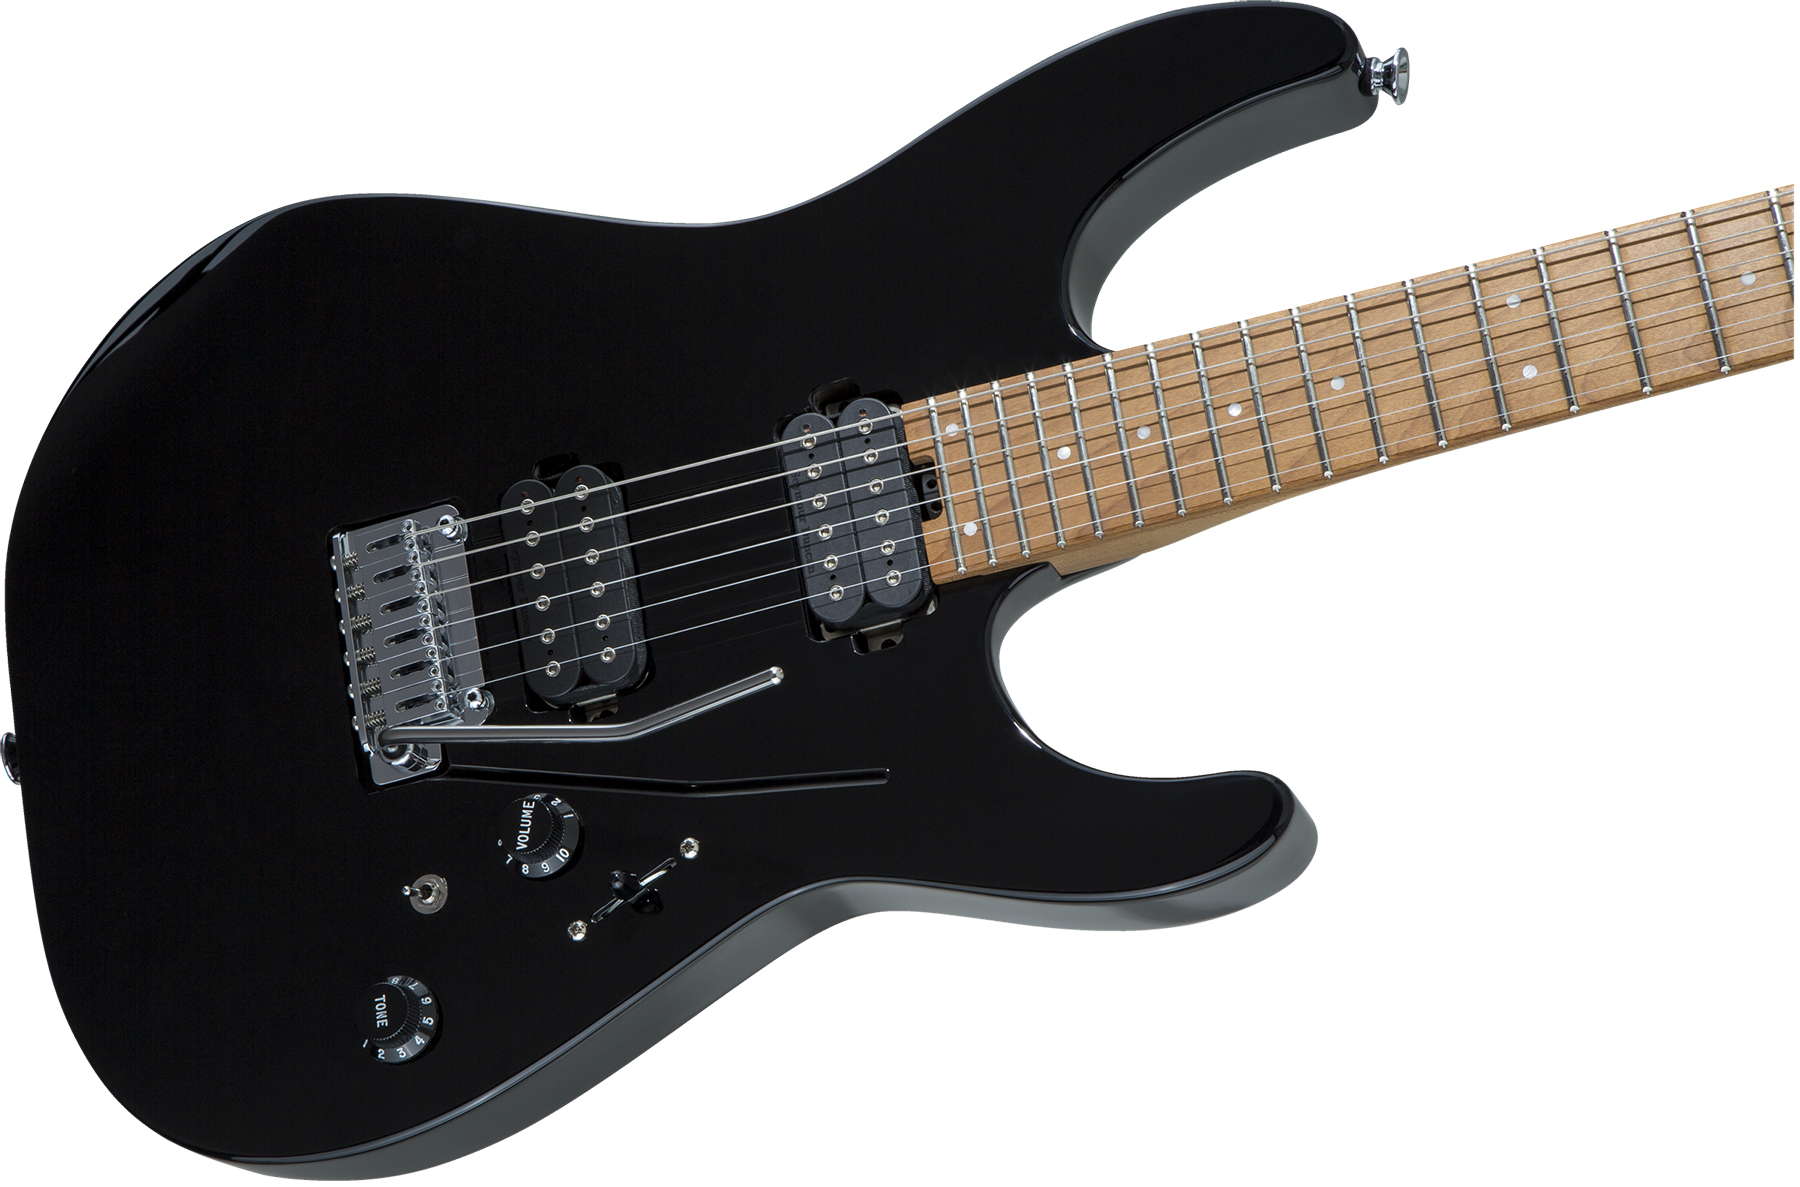 Charvel Pro-mod Dk24 Hh 2pt Cm Seymour Duncan Trem Mn - Black - E-Gitarre in Str-Form - Variation 2